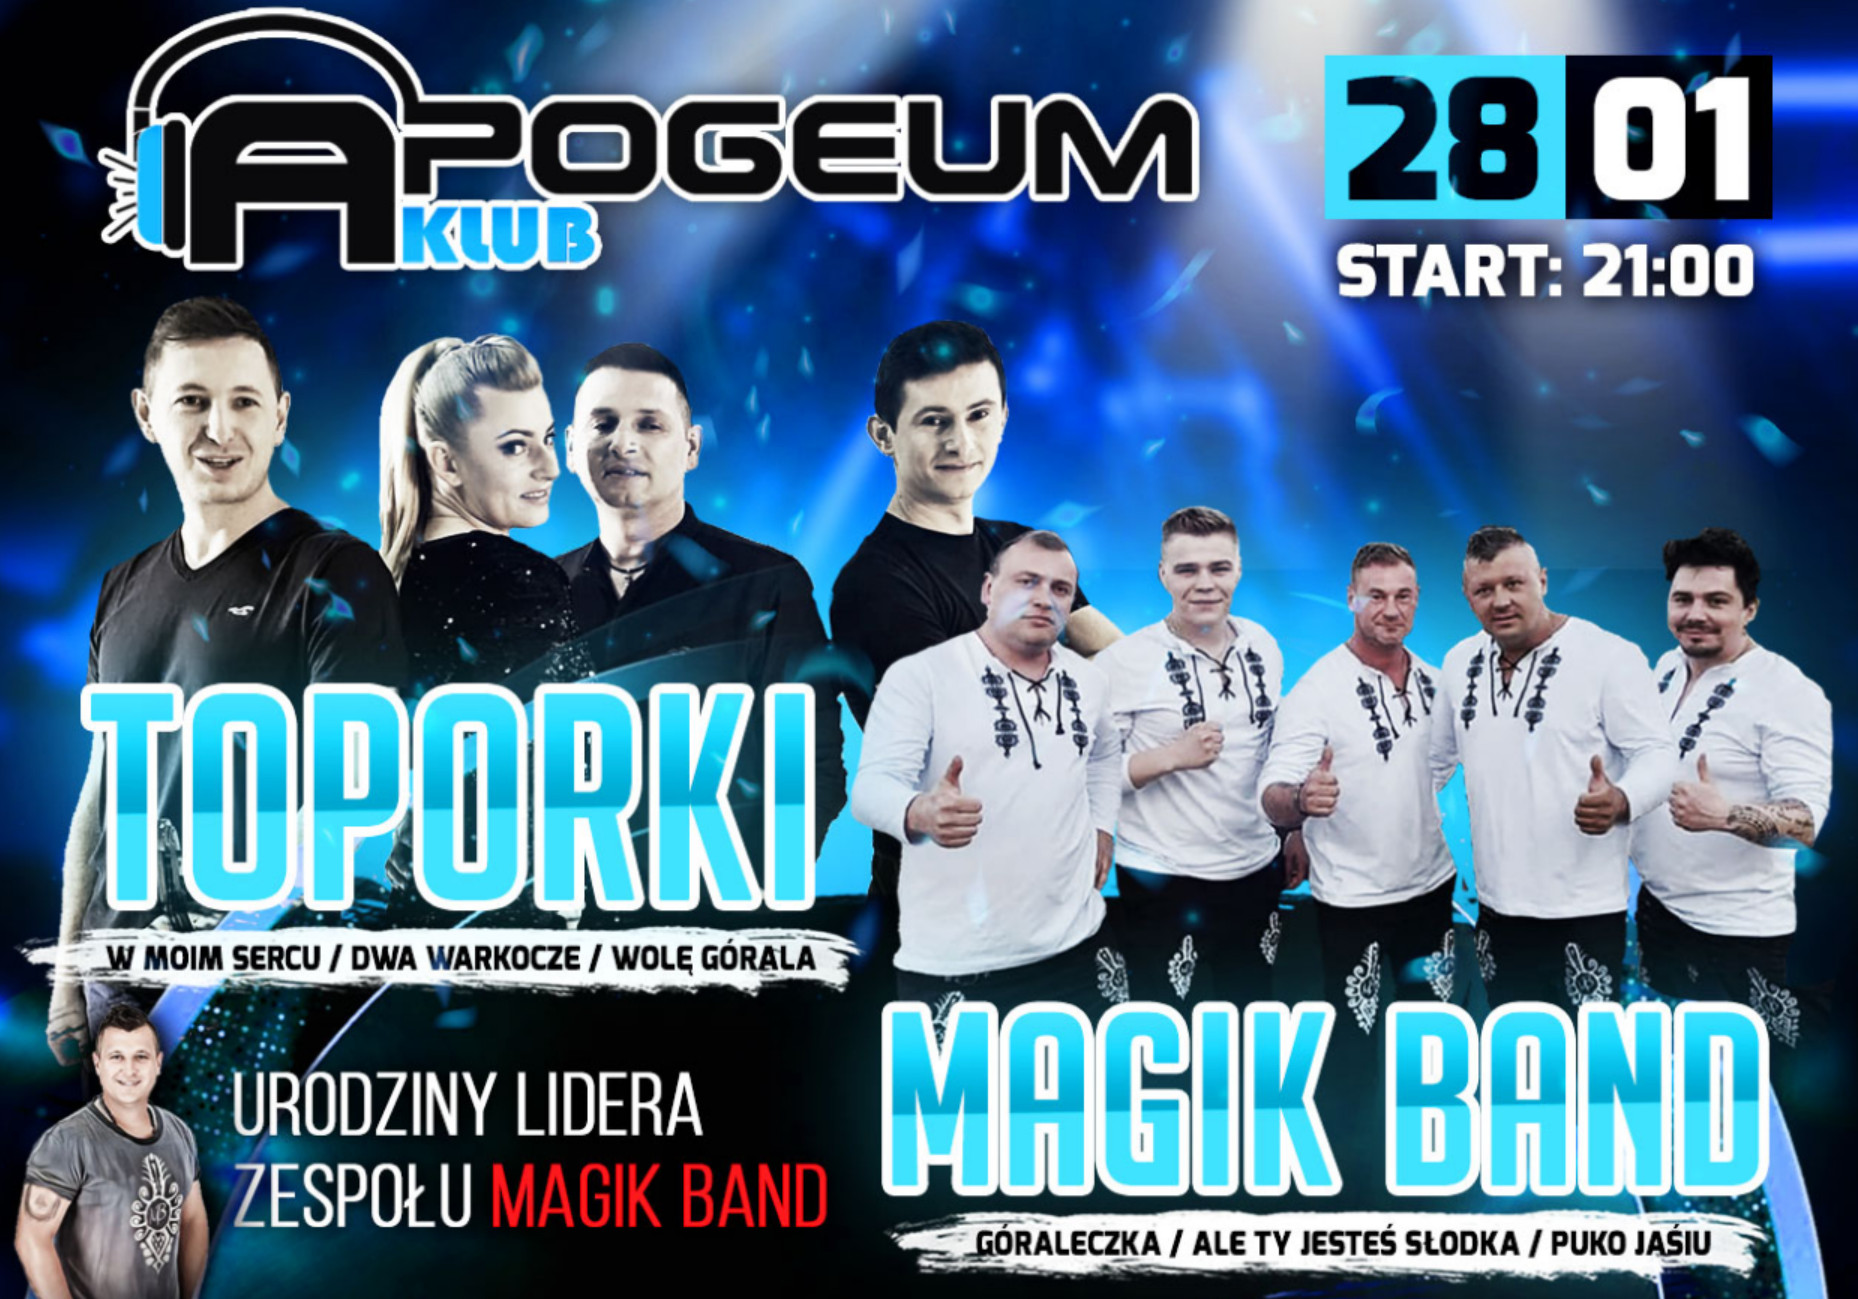 Już dziś! Wielki koncert disco polo w klubie Apogeum! Wystąpią Magik Band oraz Toporki!